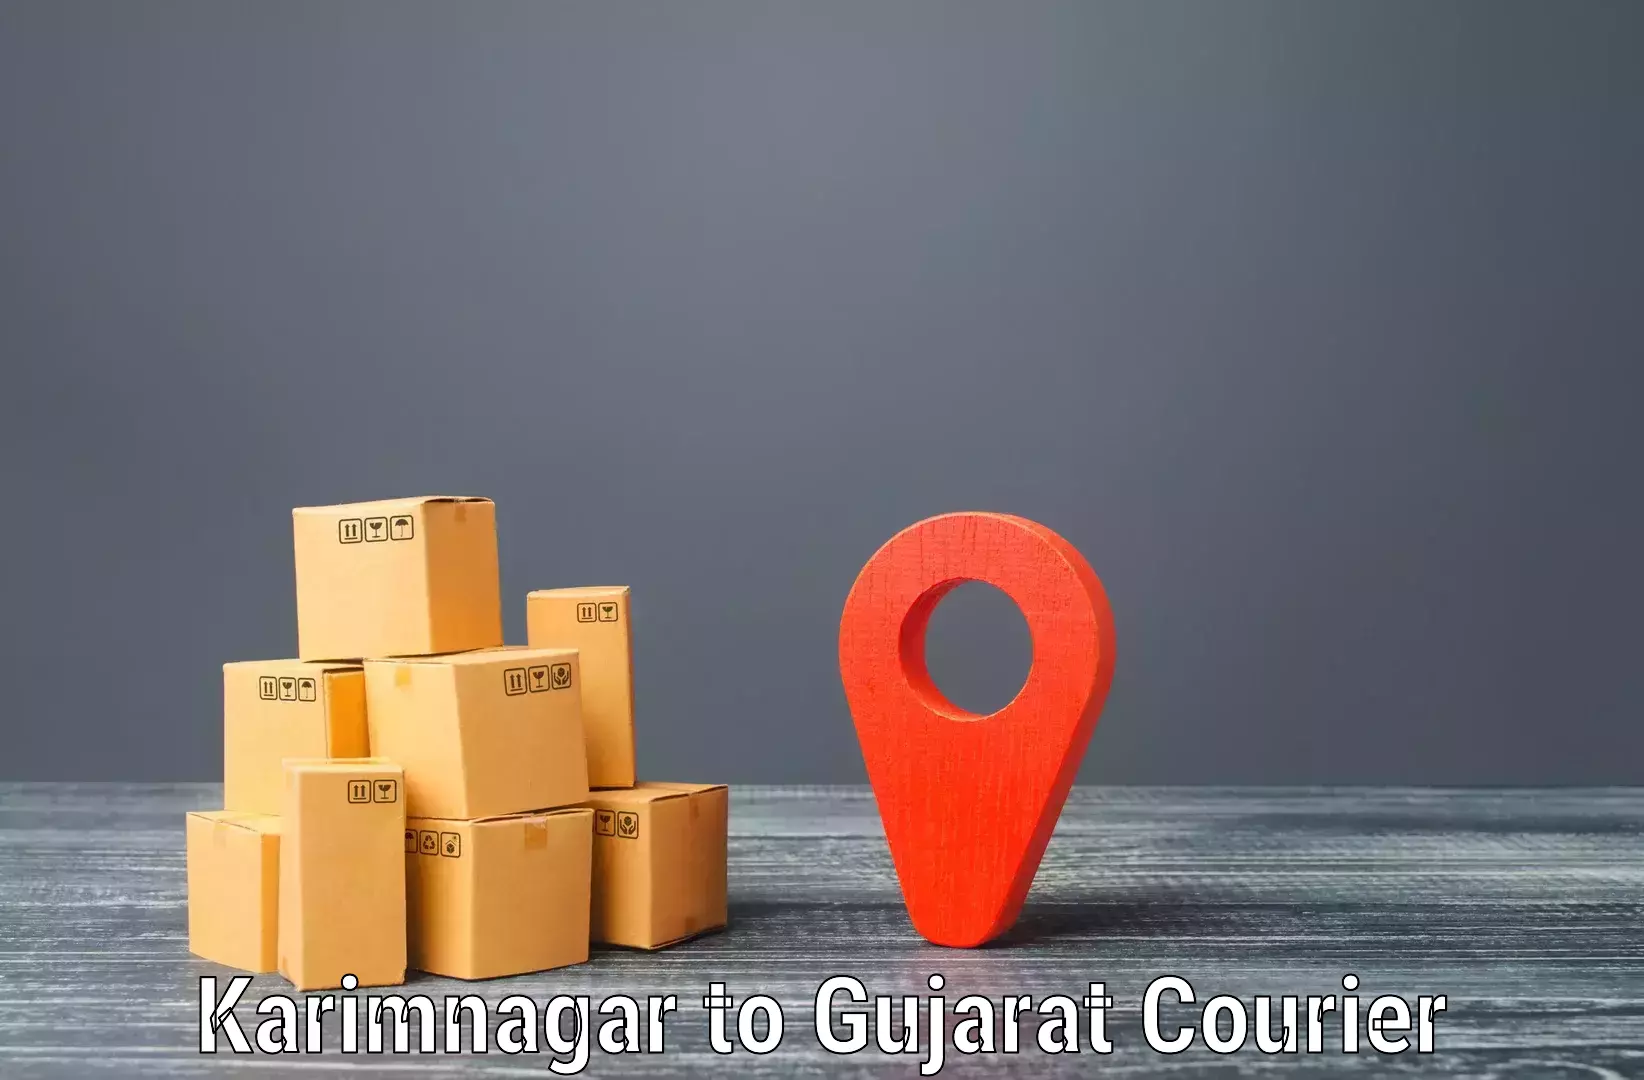 Cash on delivery service Karimnagar to IIT Gandhi Nagar